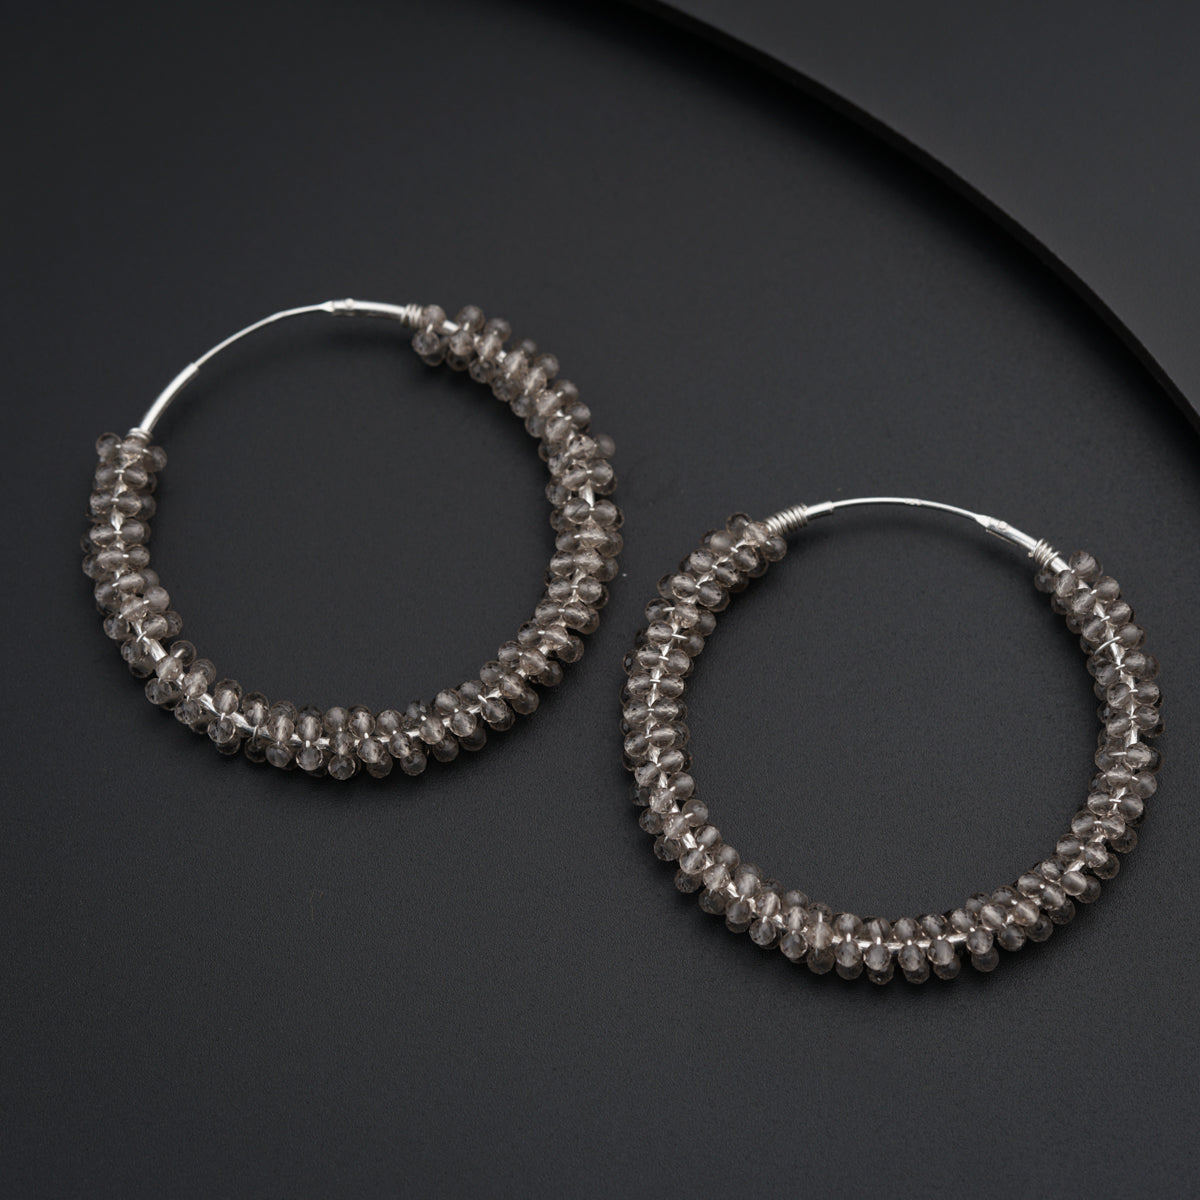 a pair of hoop earrings on a black surface